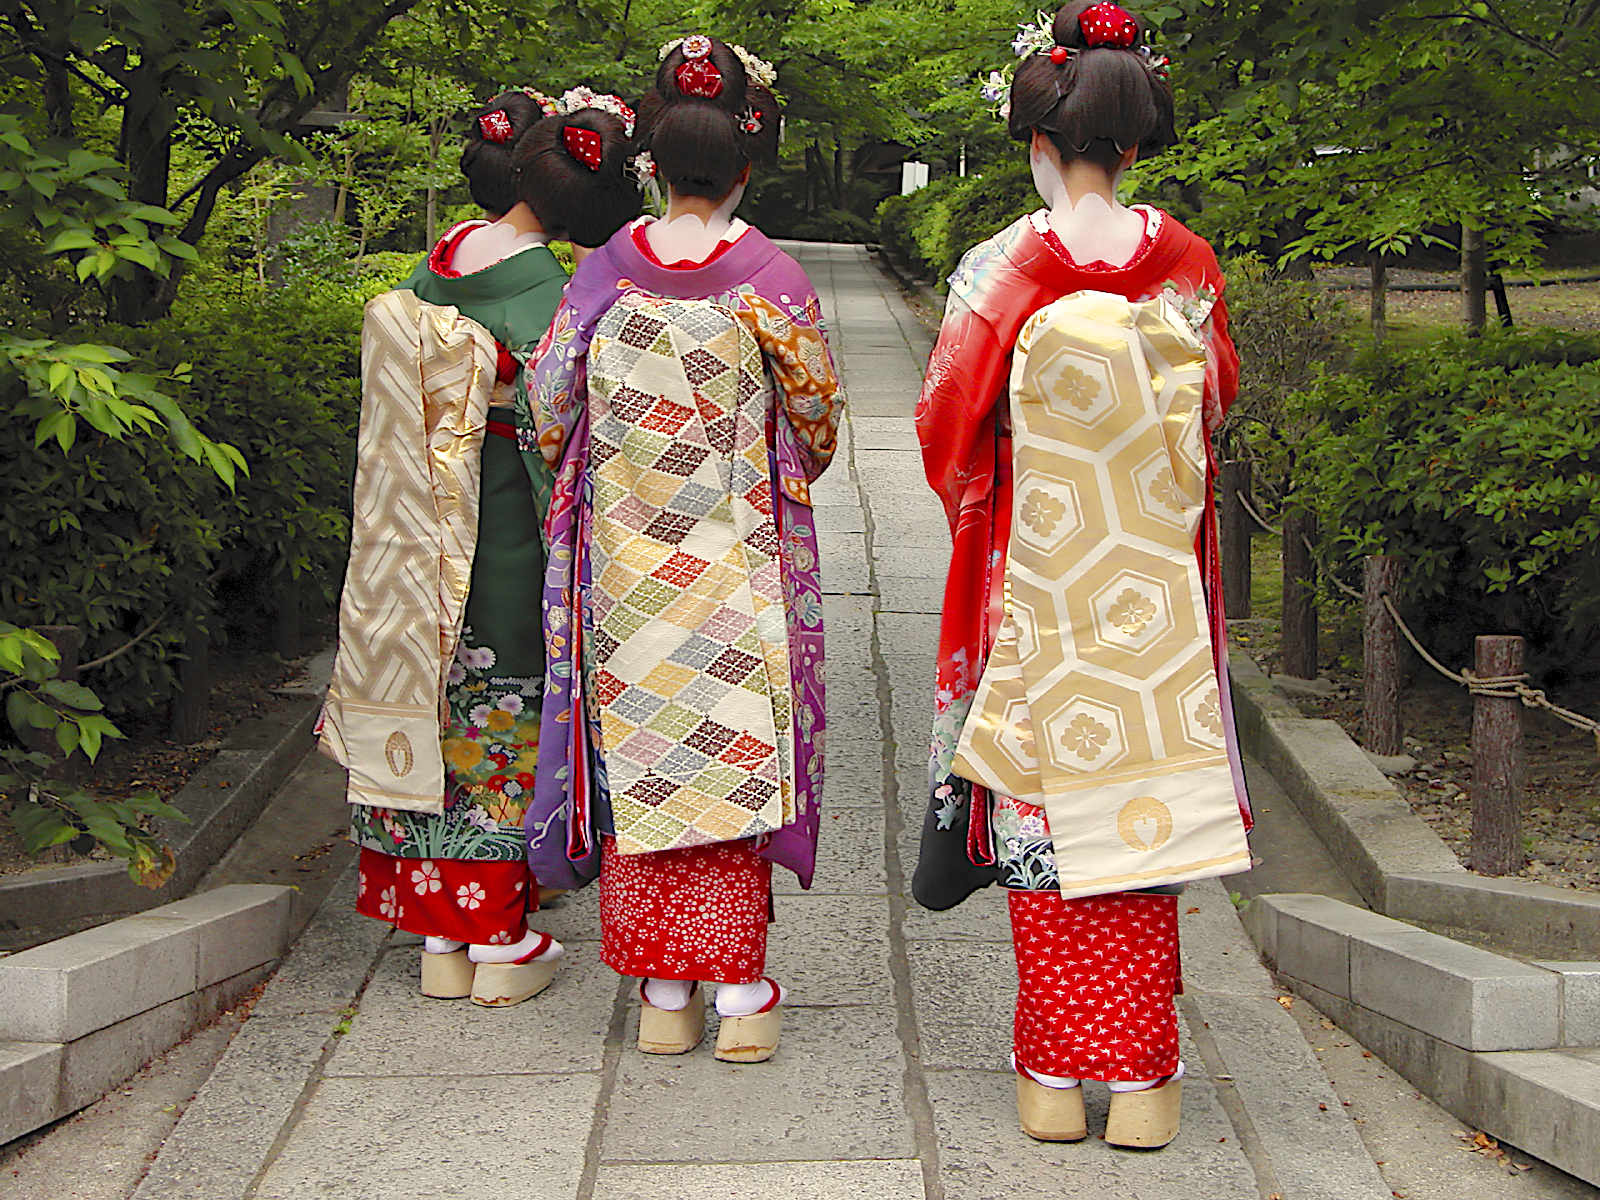 Young geisha (known as maiko) in resplendent kimono